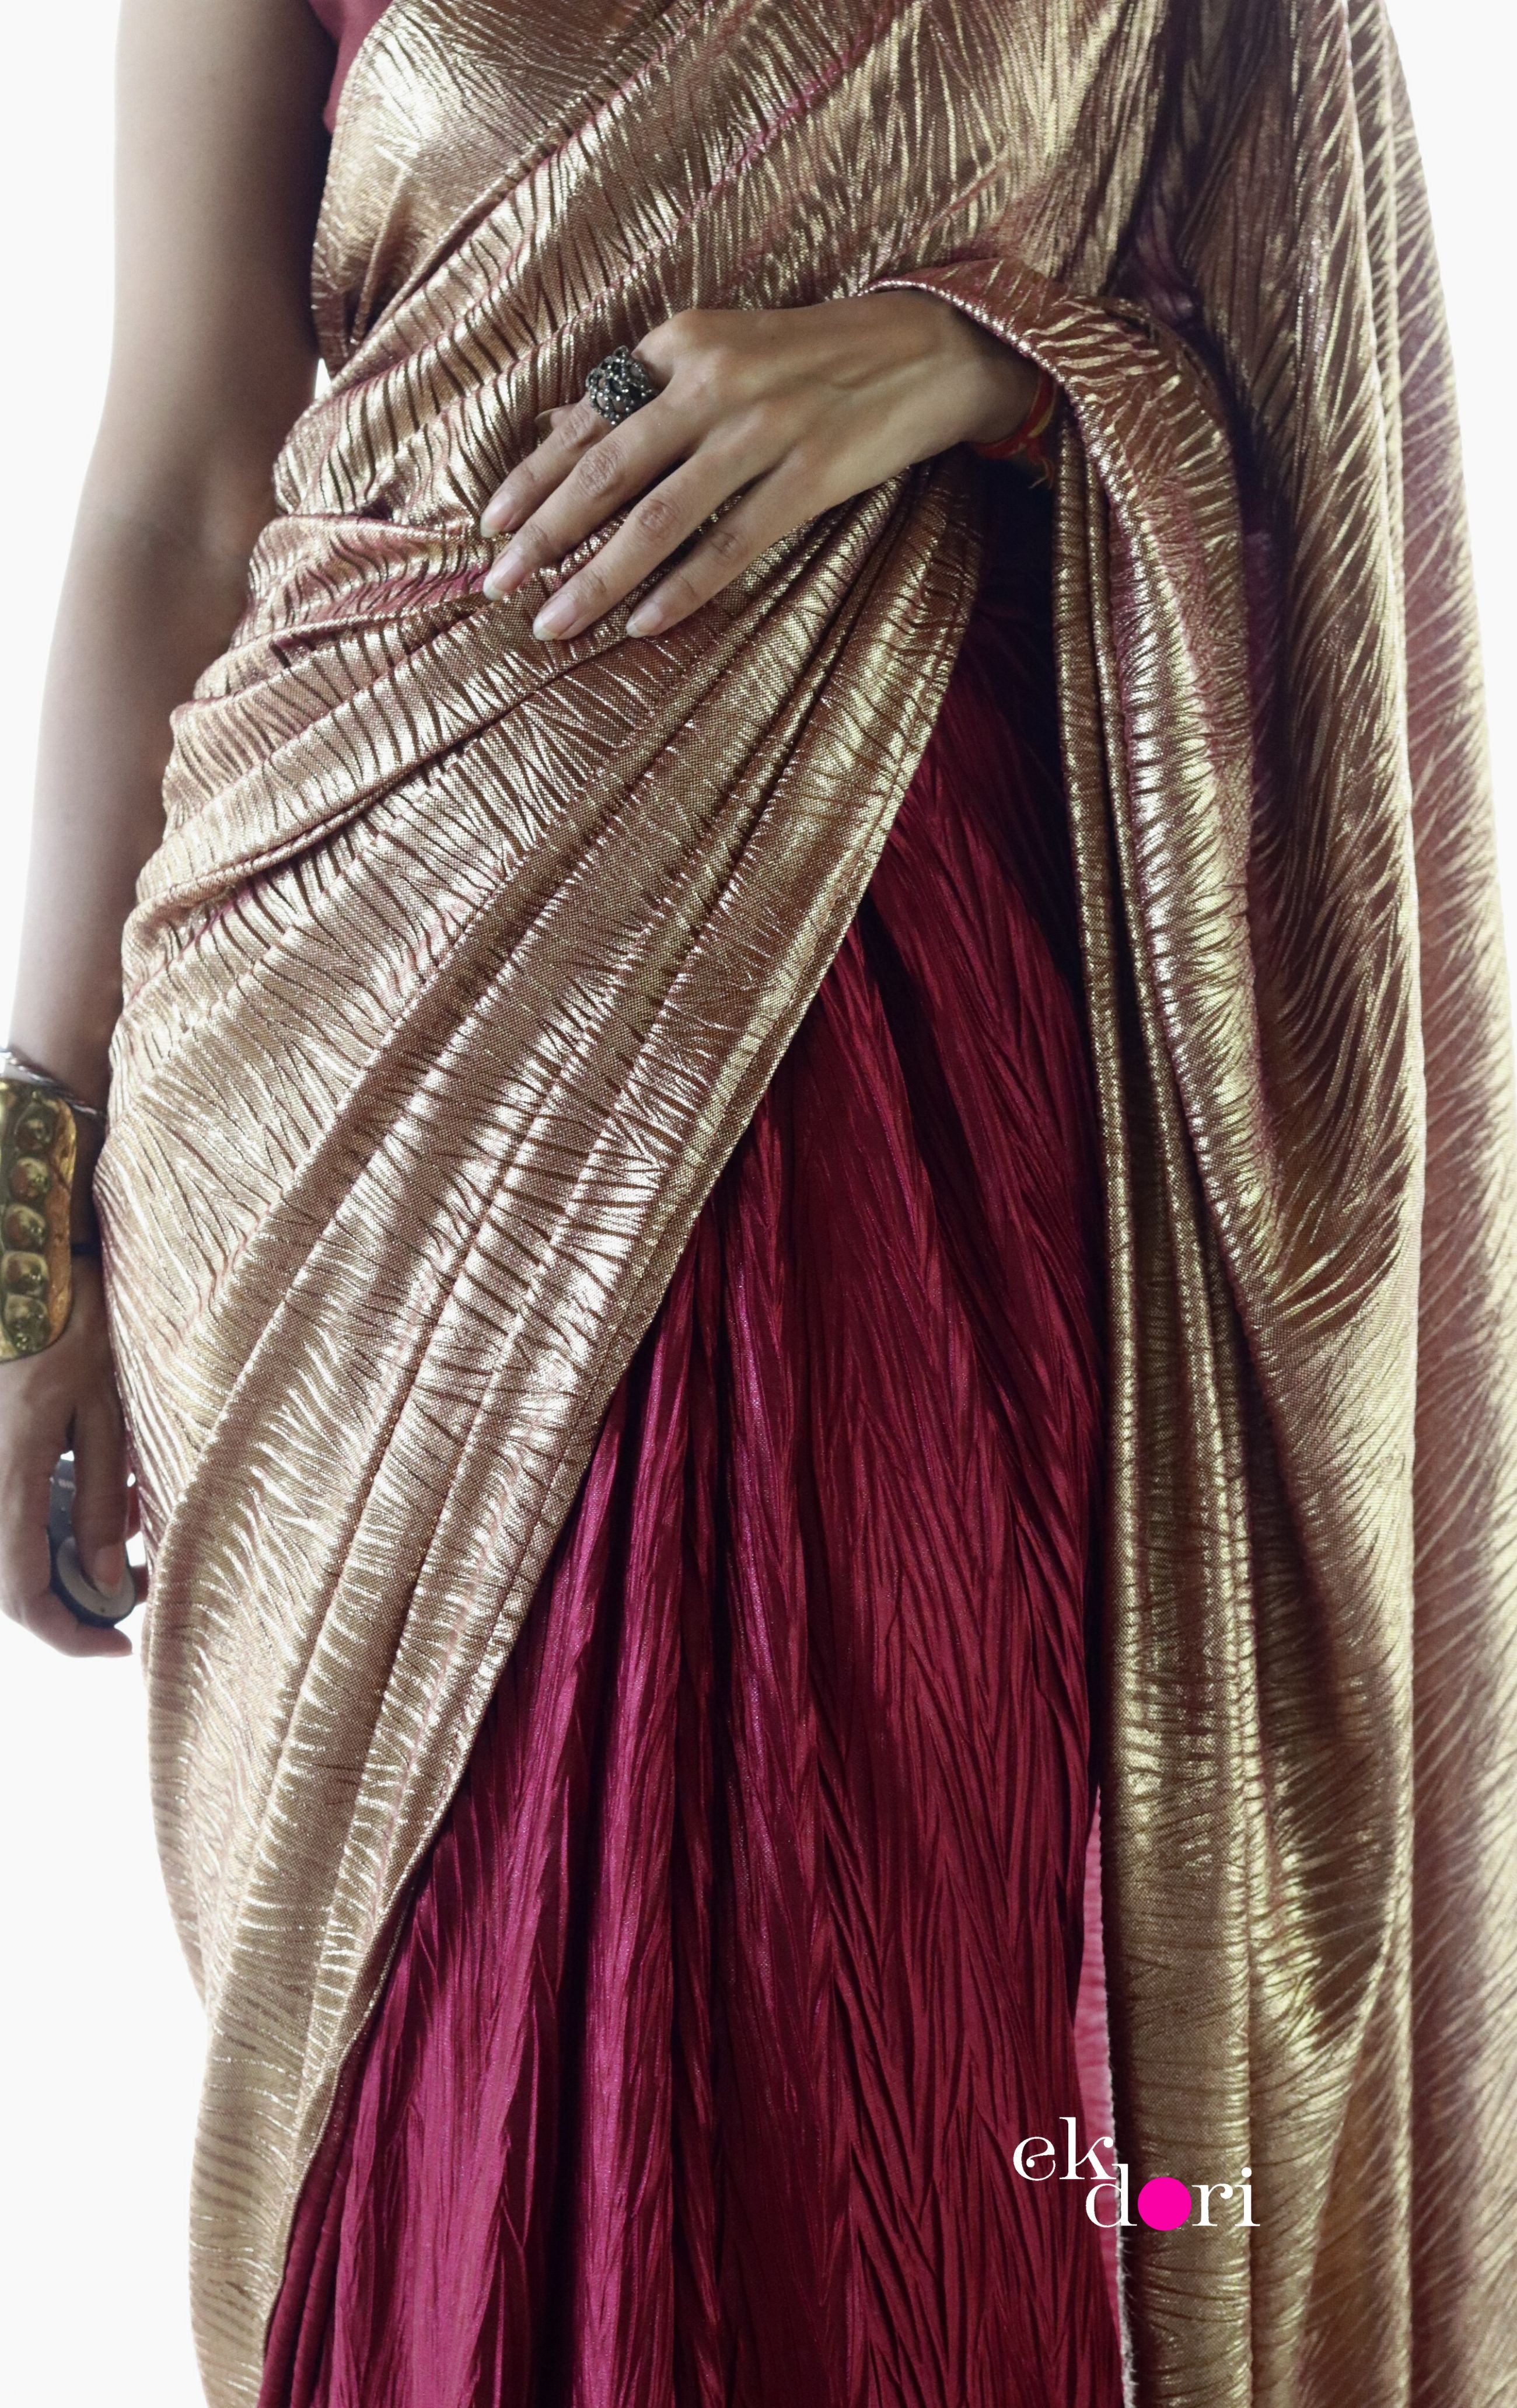 Saiee Manjrekar sizzles in a metallic saree at 